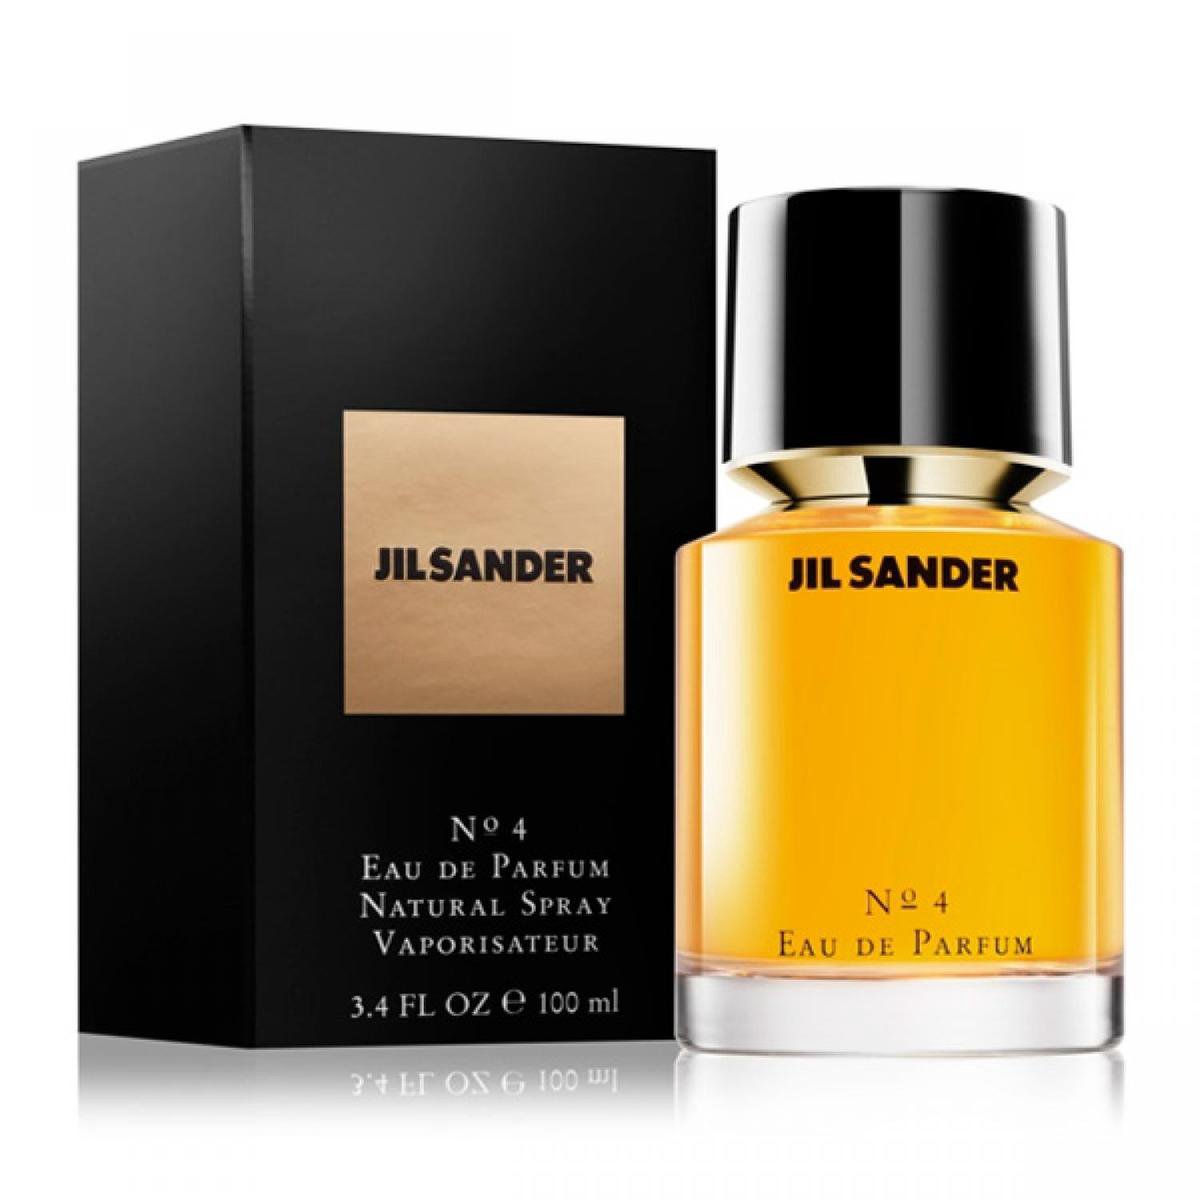 bol.com | Jil Sander No.4 100 ml - Eau de Parfum - Damesparfum